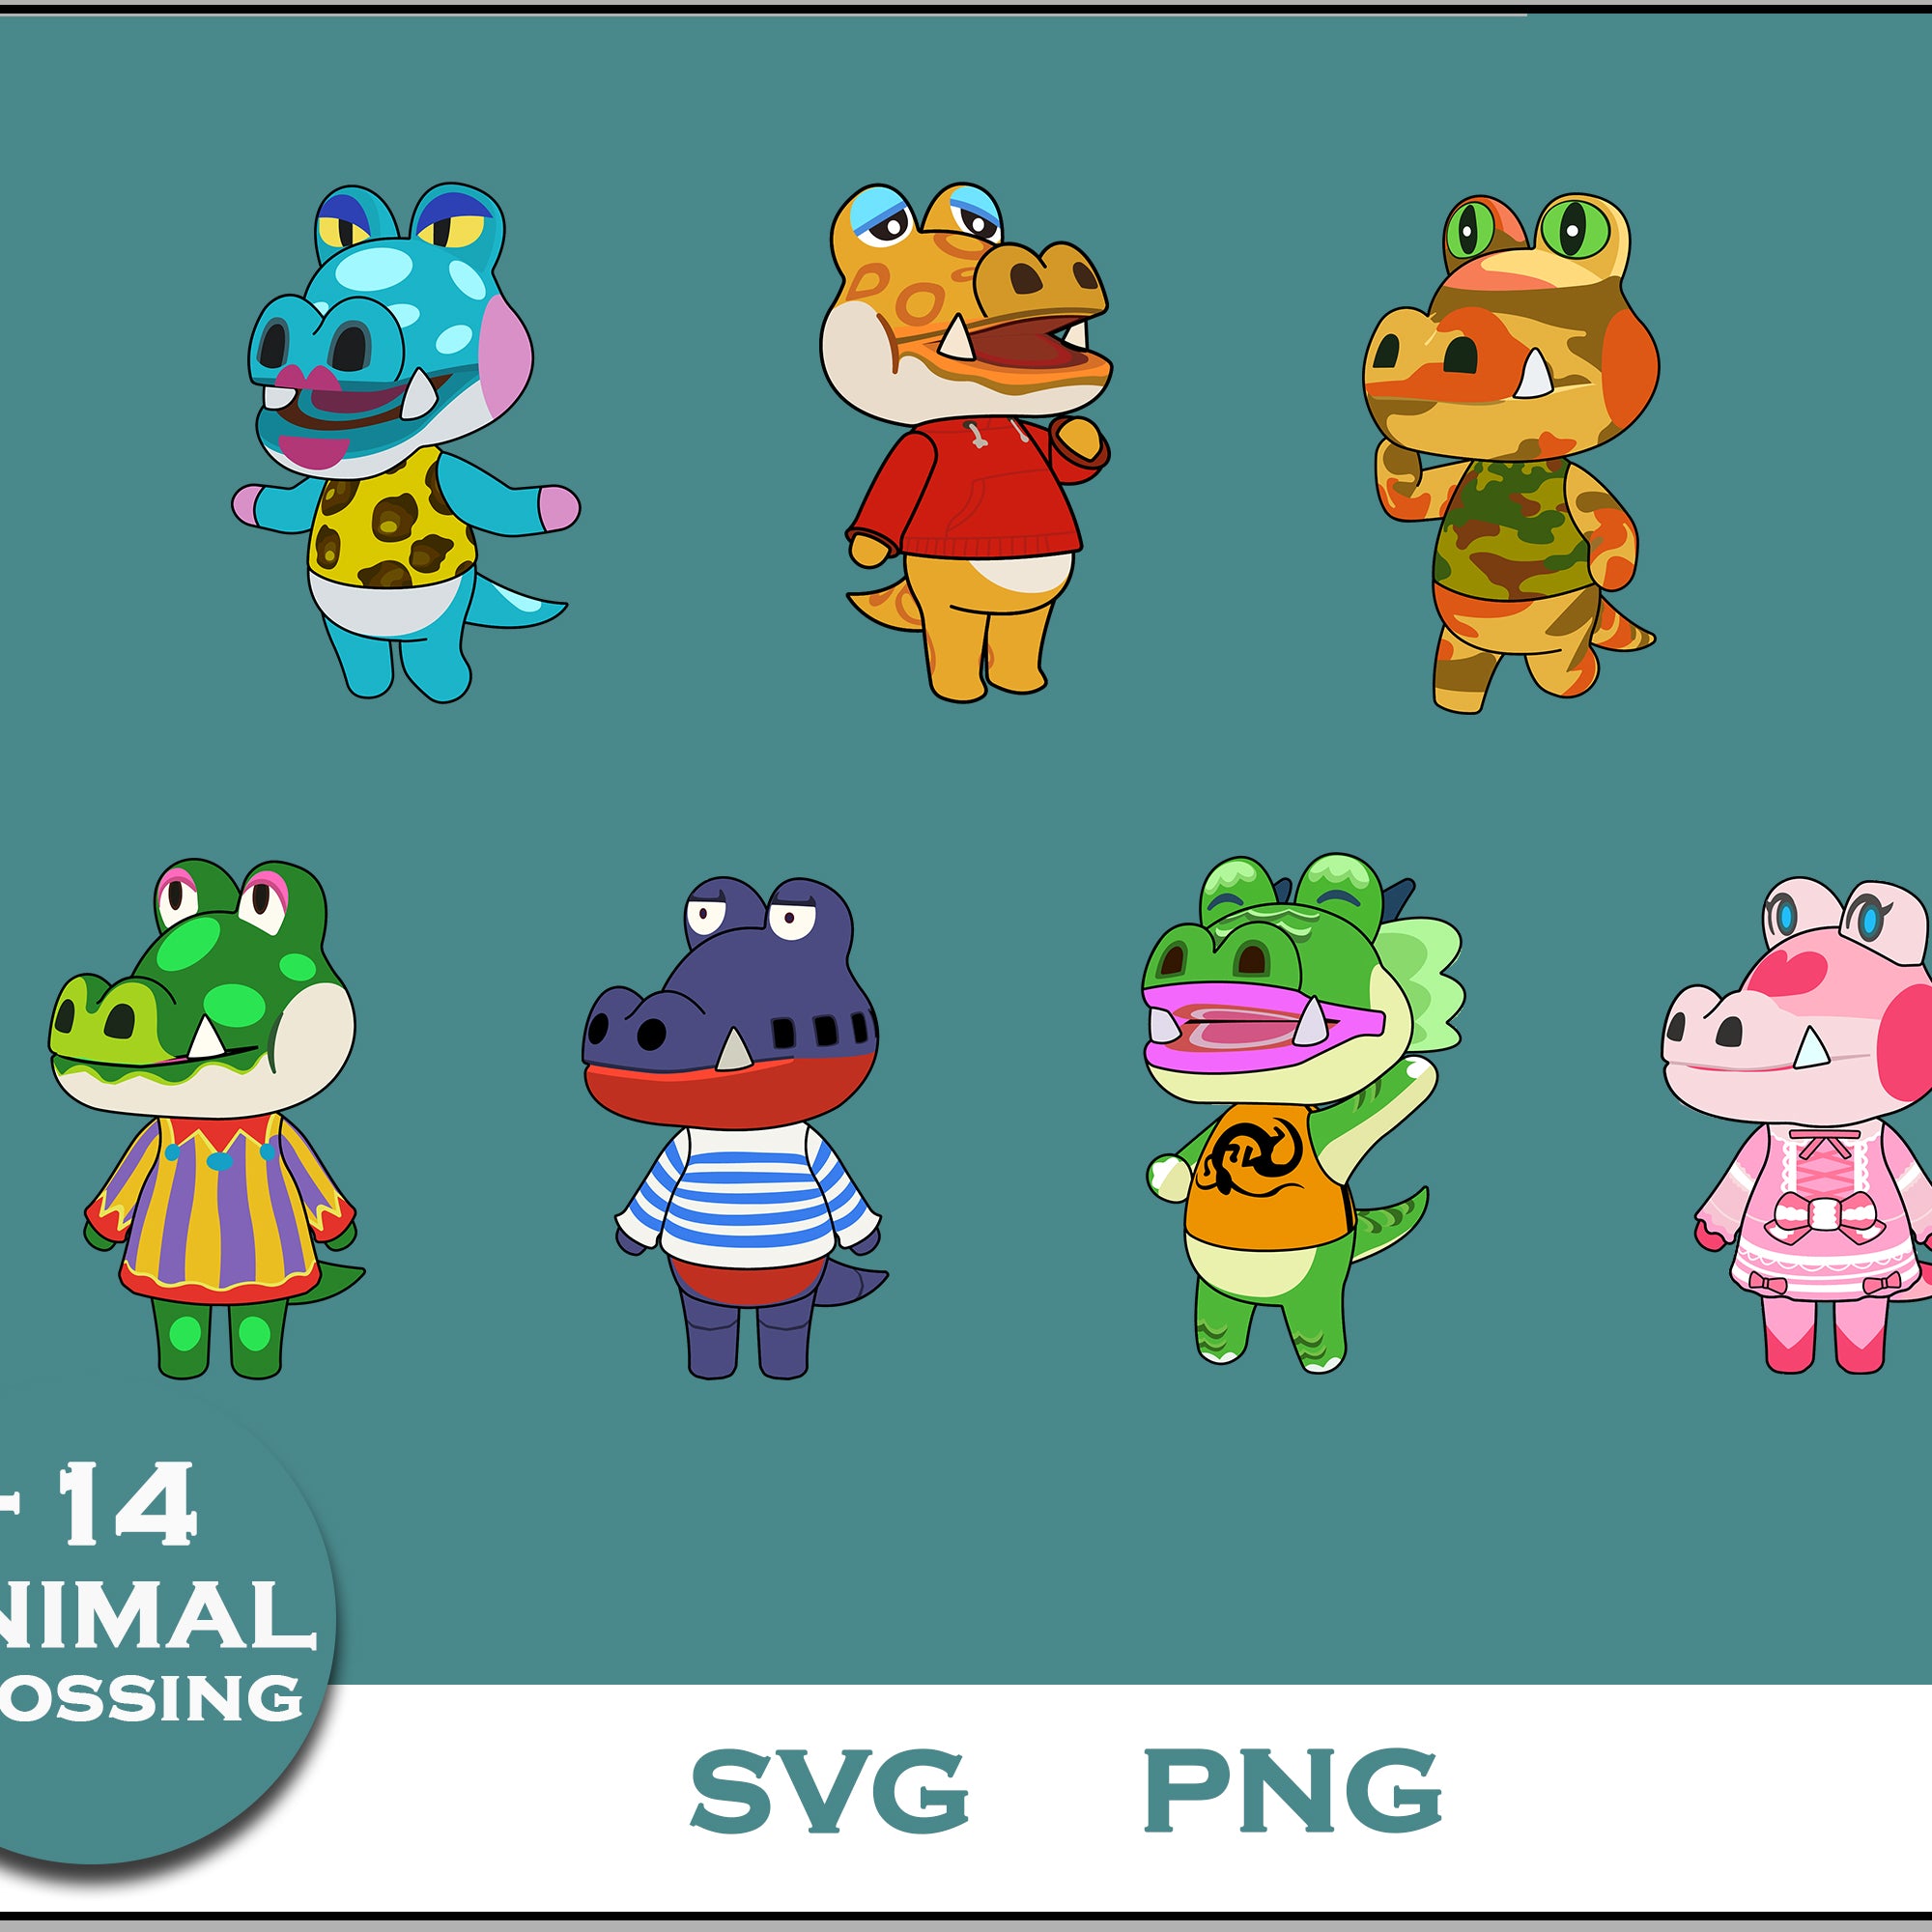 14+ Alligator Svg Bundle, Animal Crossing Svg Bundle, Animal Crossing Svg, Cartoon svg, png digital file